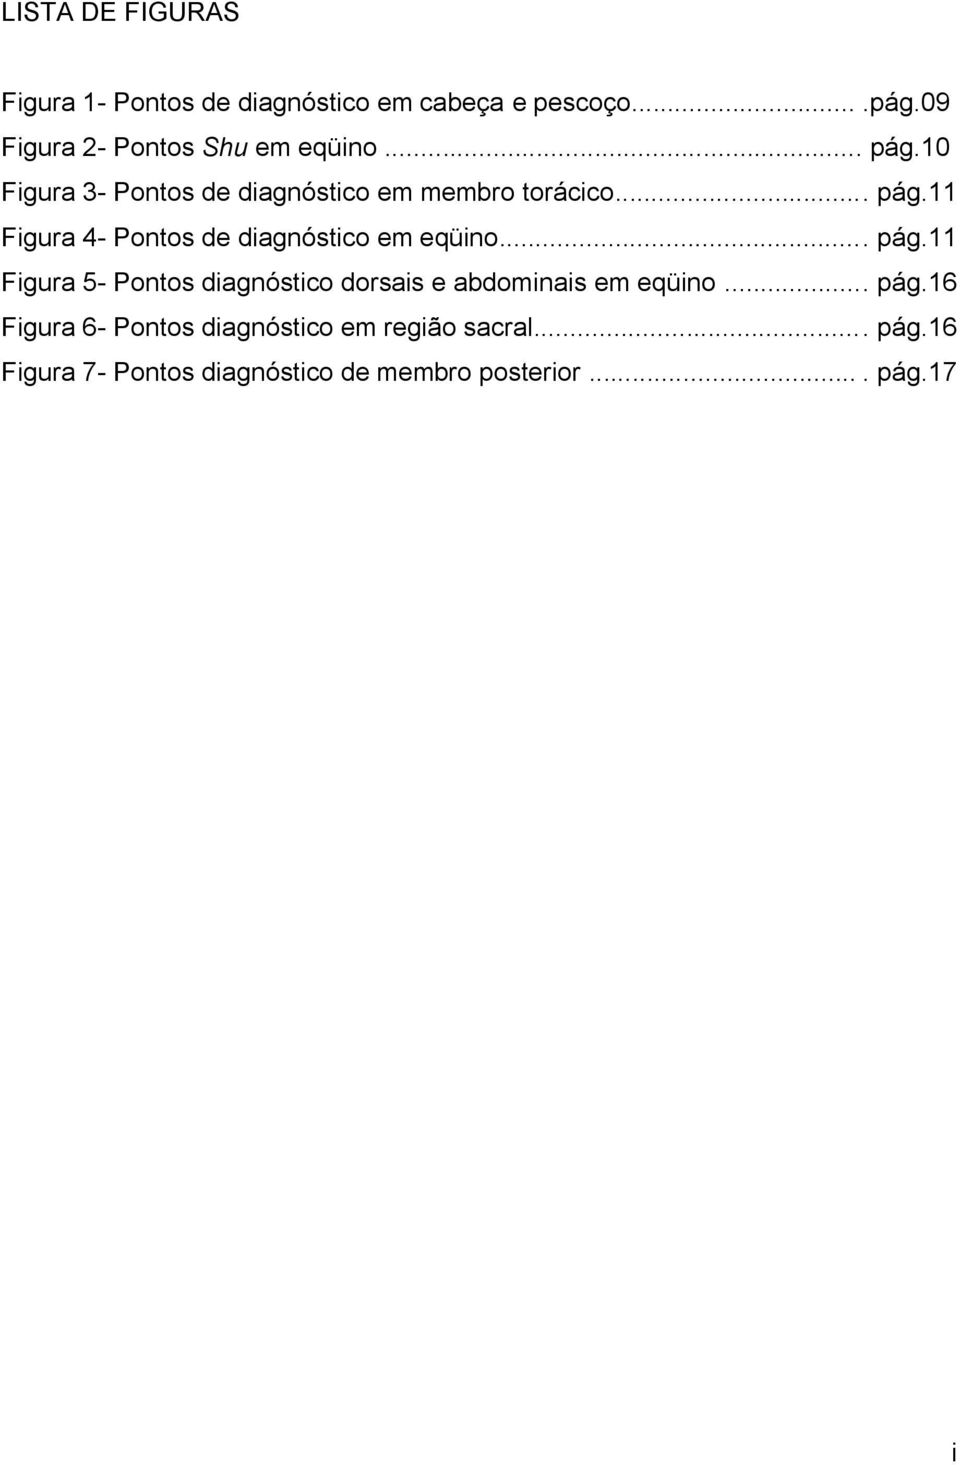 ... pág.11 Figura 5- Pontos diagnóstico dorsais e abdominais em eqüino... pág.16 Figura 6- Pontos diagnóstico em região sacral.